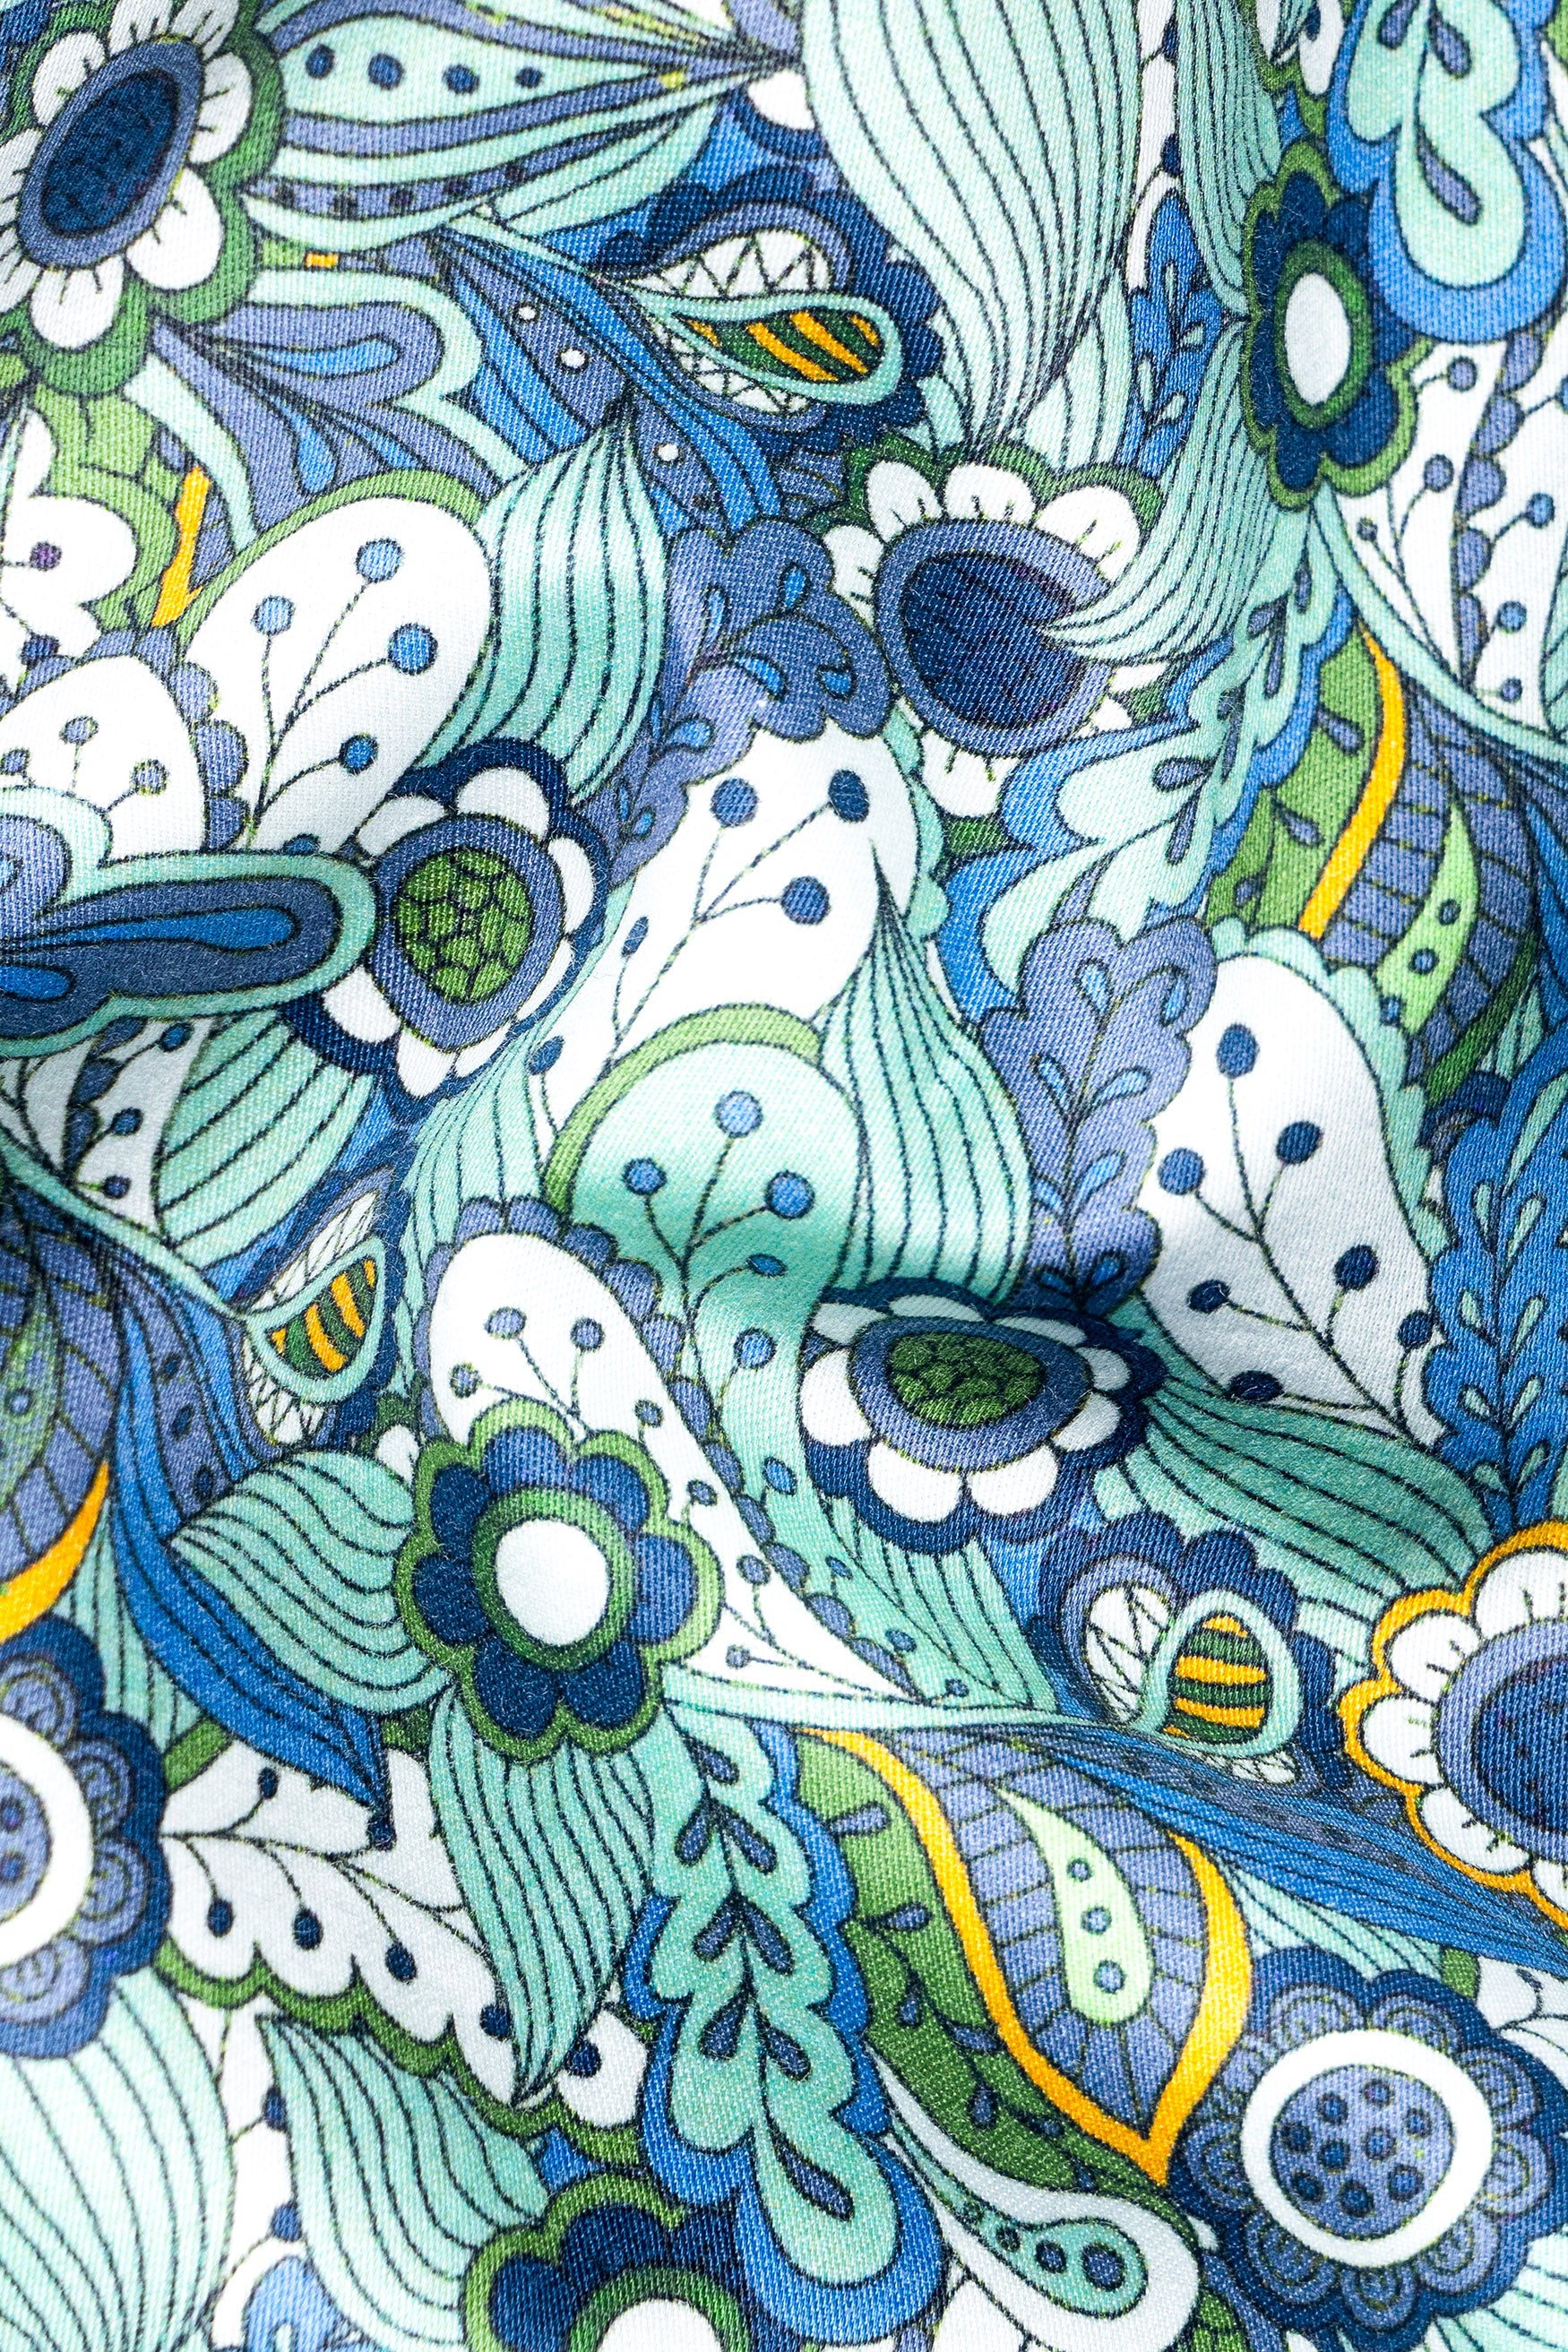 Sinbad Blue Multicolor Floral Printed Subtle Sheen Super Soft Premium Cotton Shirt